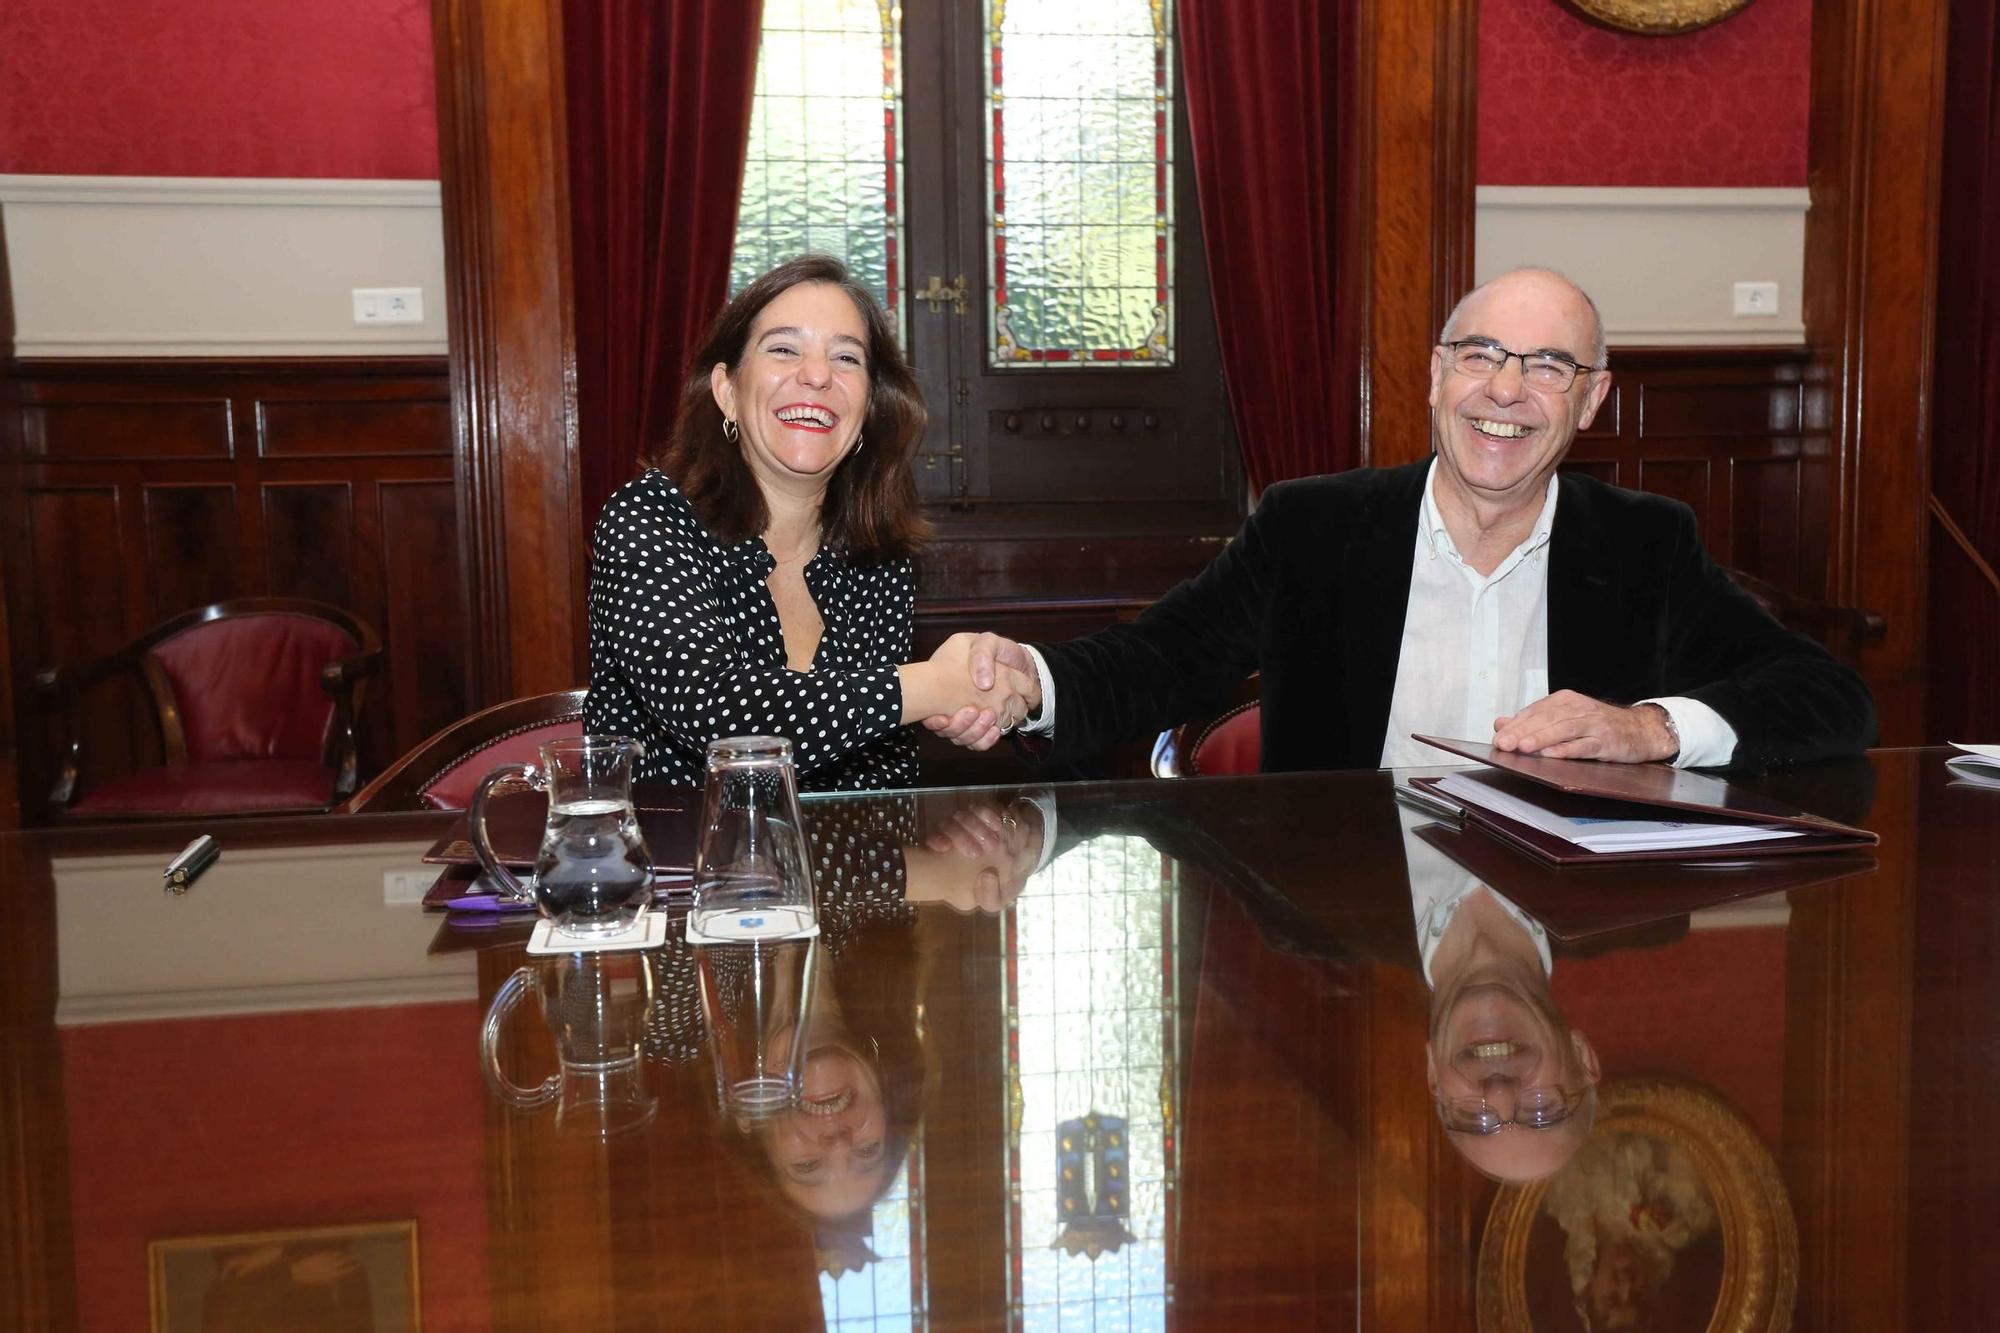 Acuerdo PSOE-BNG para aprobar el presupuesto municipal de A Coruña para 2024